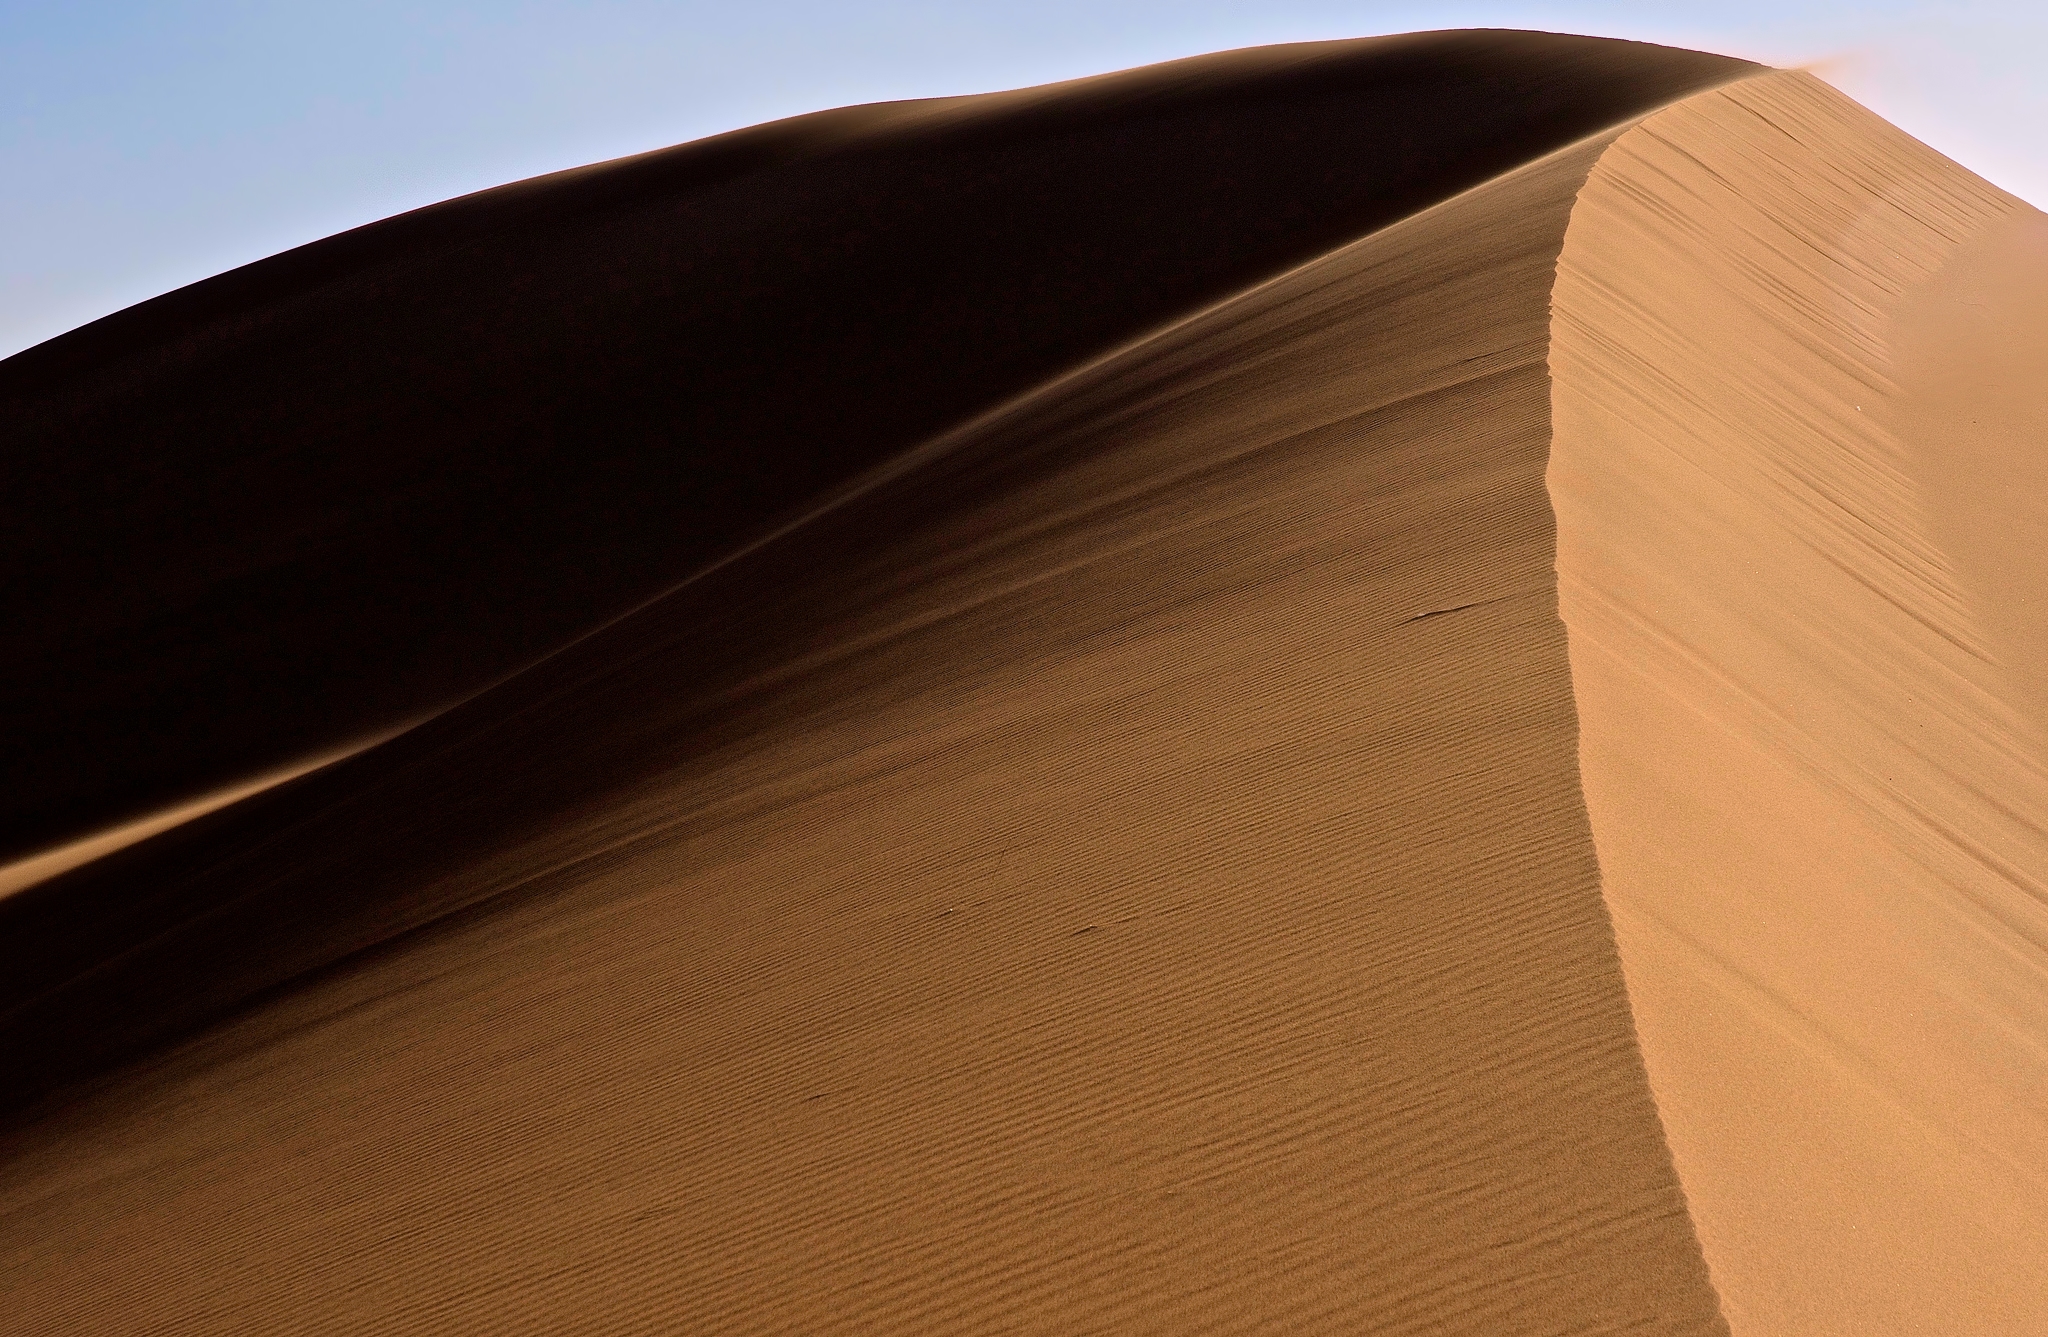 Free download wallpaper Sand, Desert, Earth, Dune, Sahara, Africa, Algeria on your PC desktop